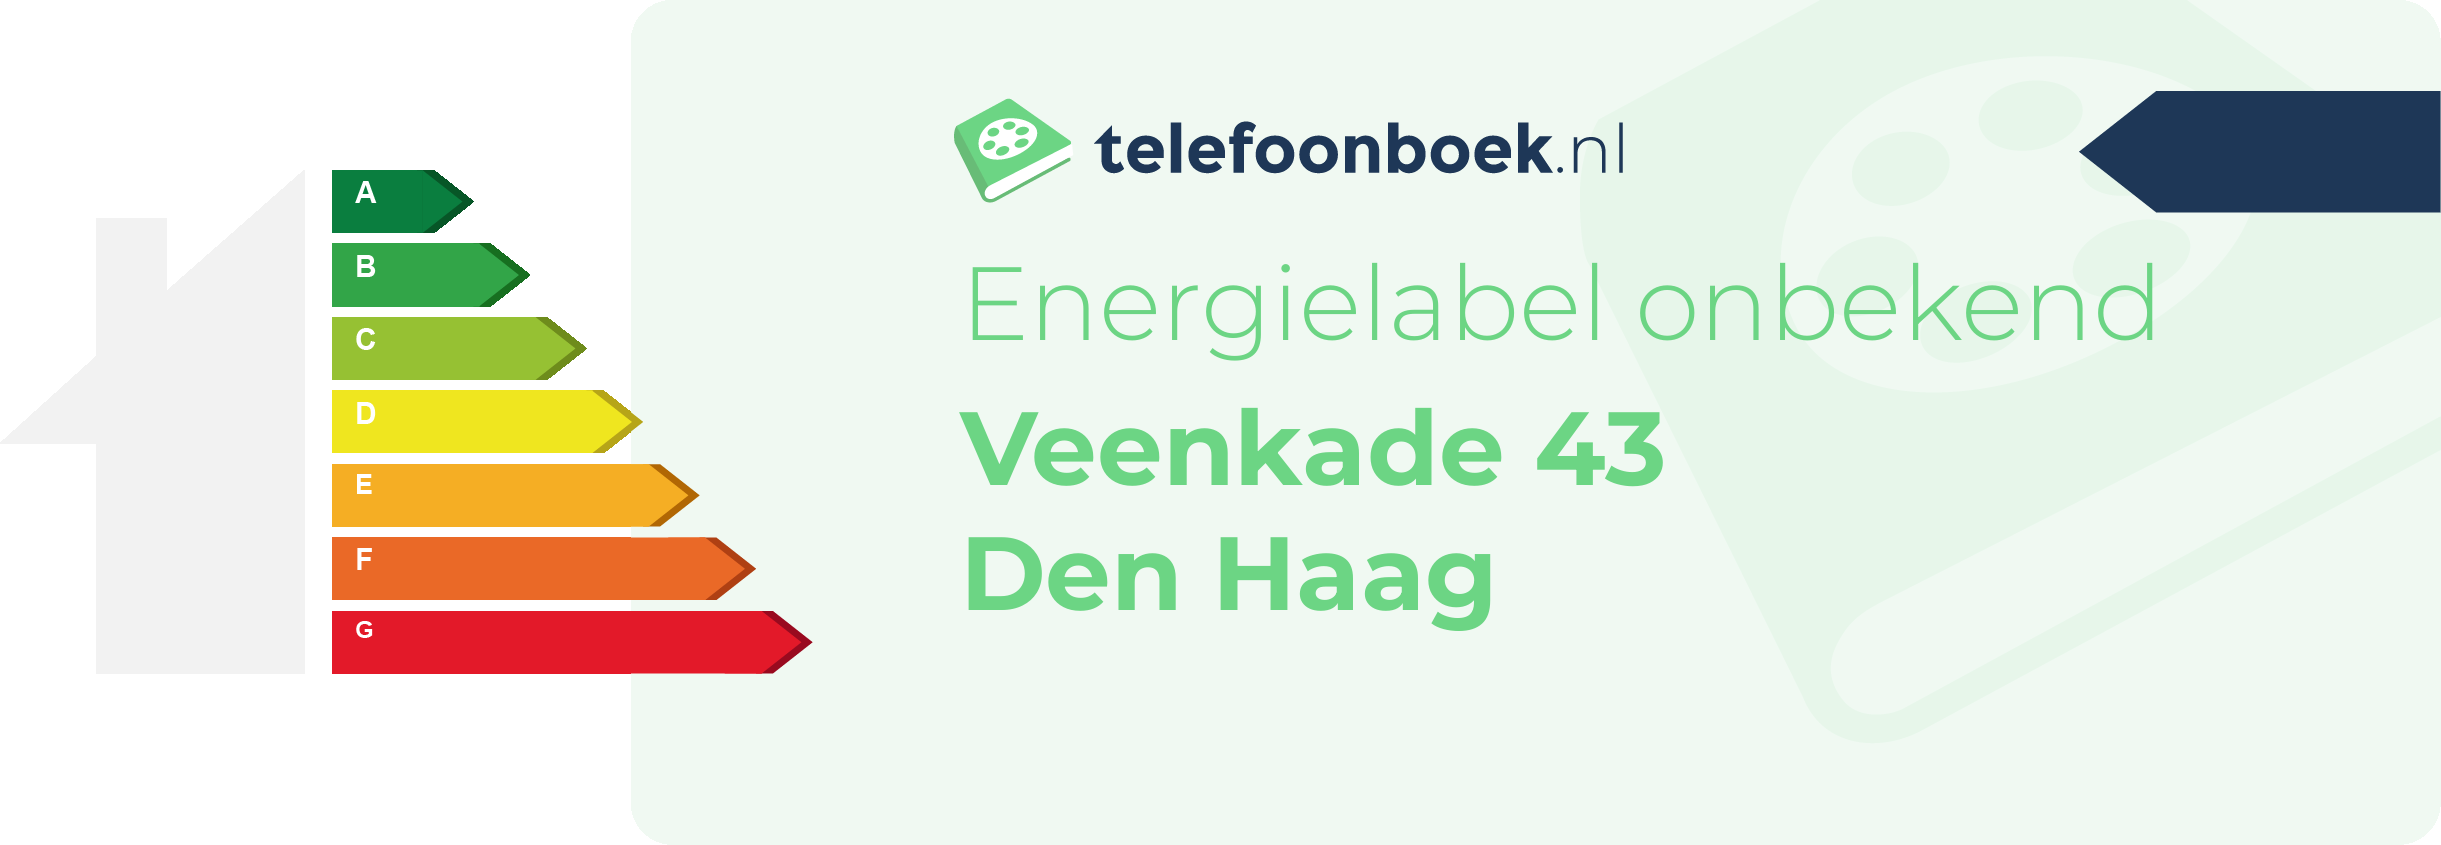 Energielabel Veenkade 43 Den Haag